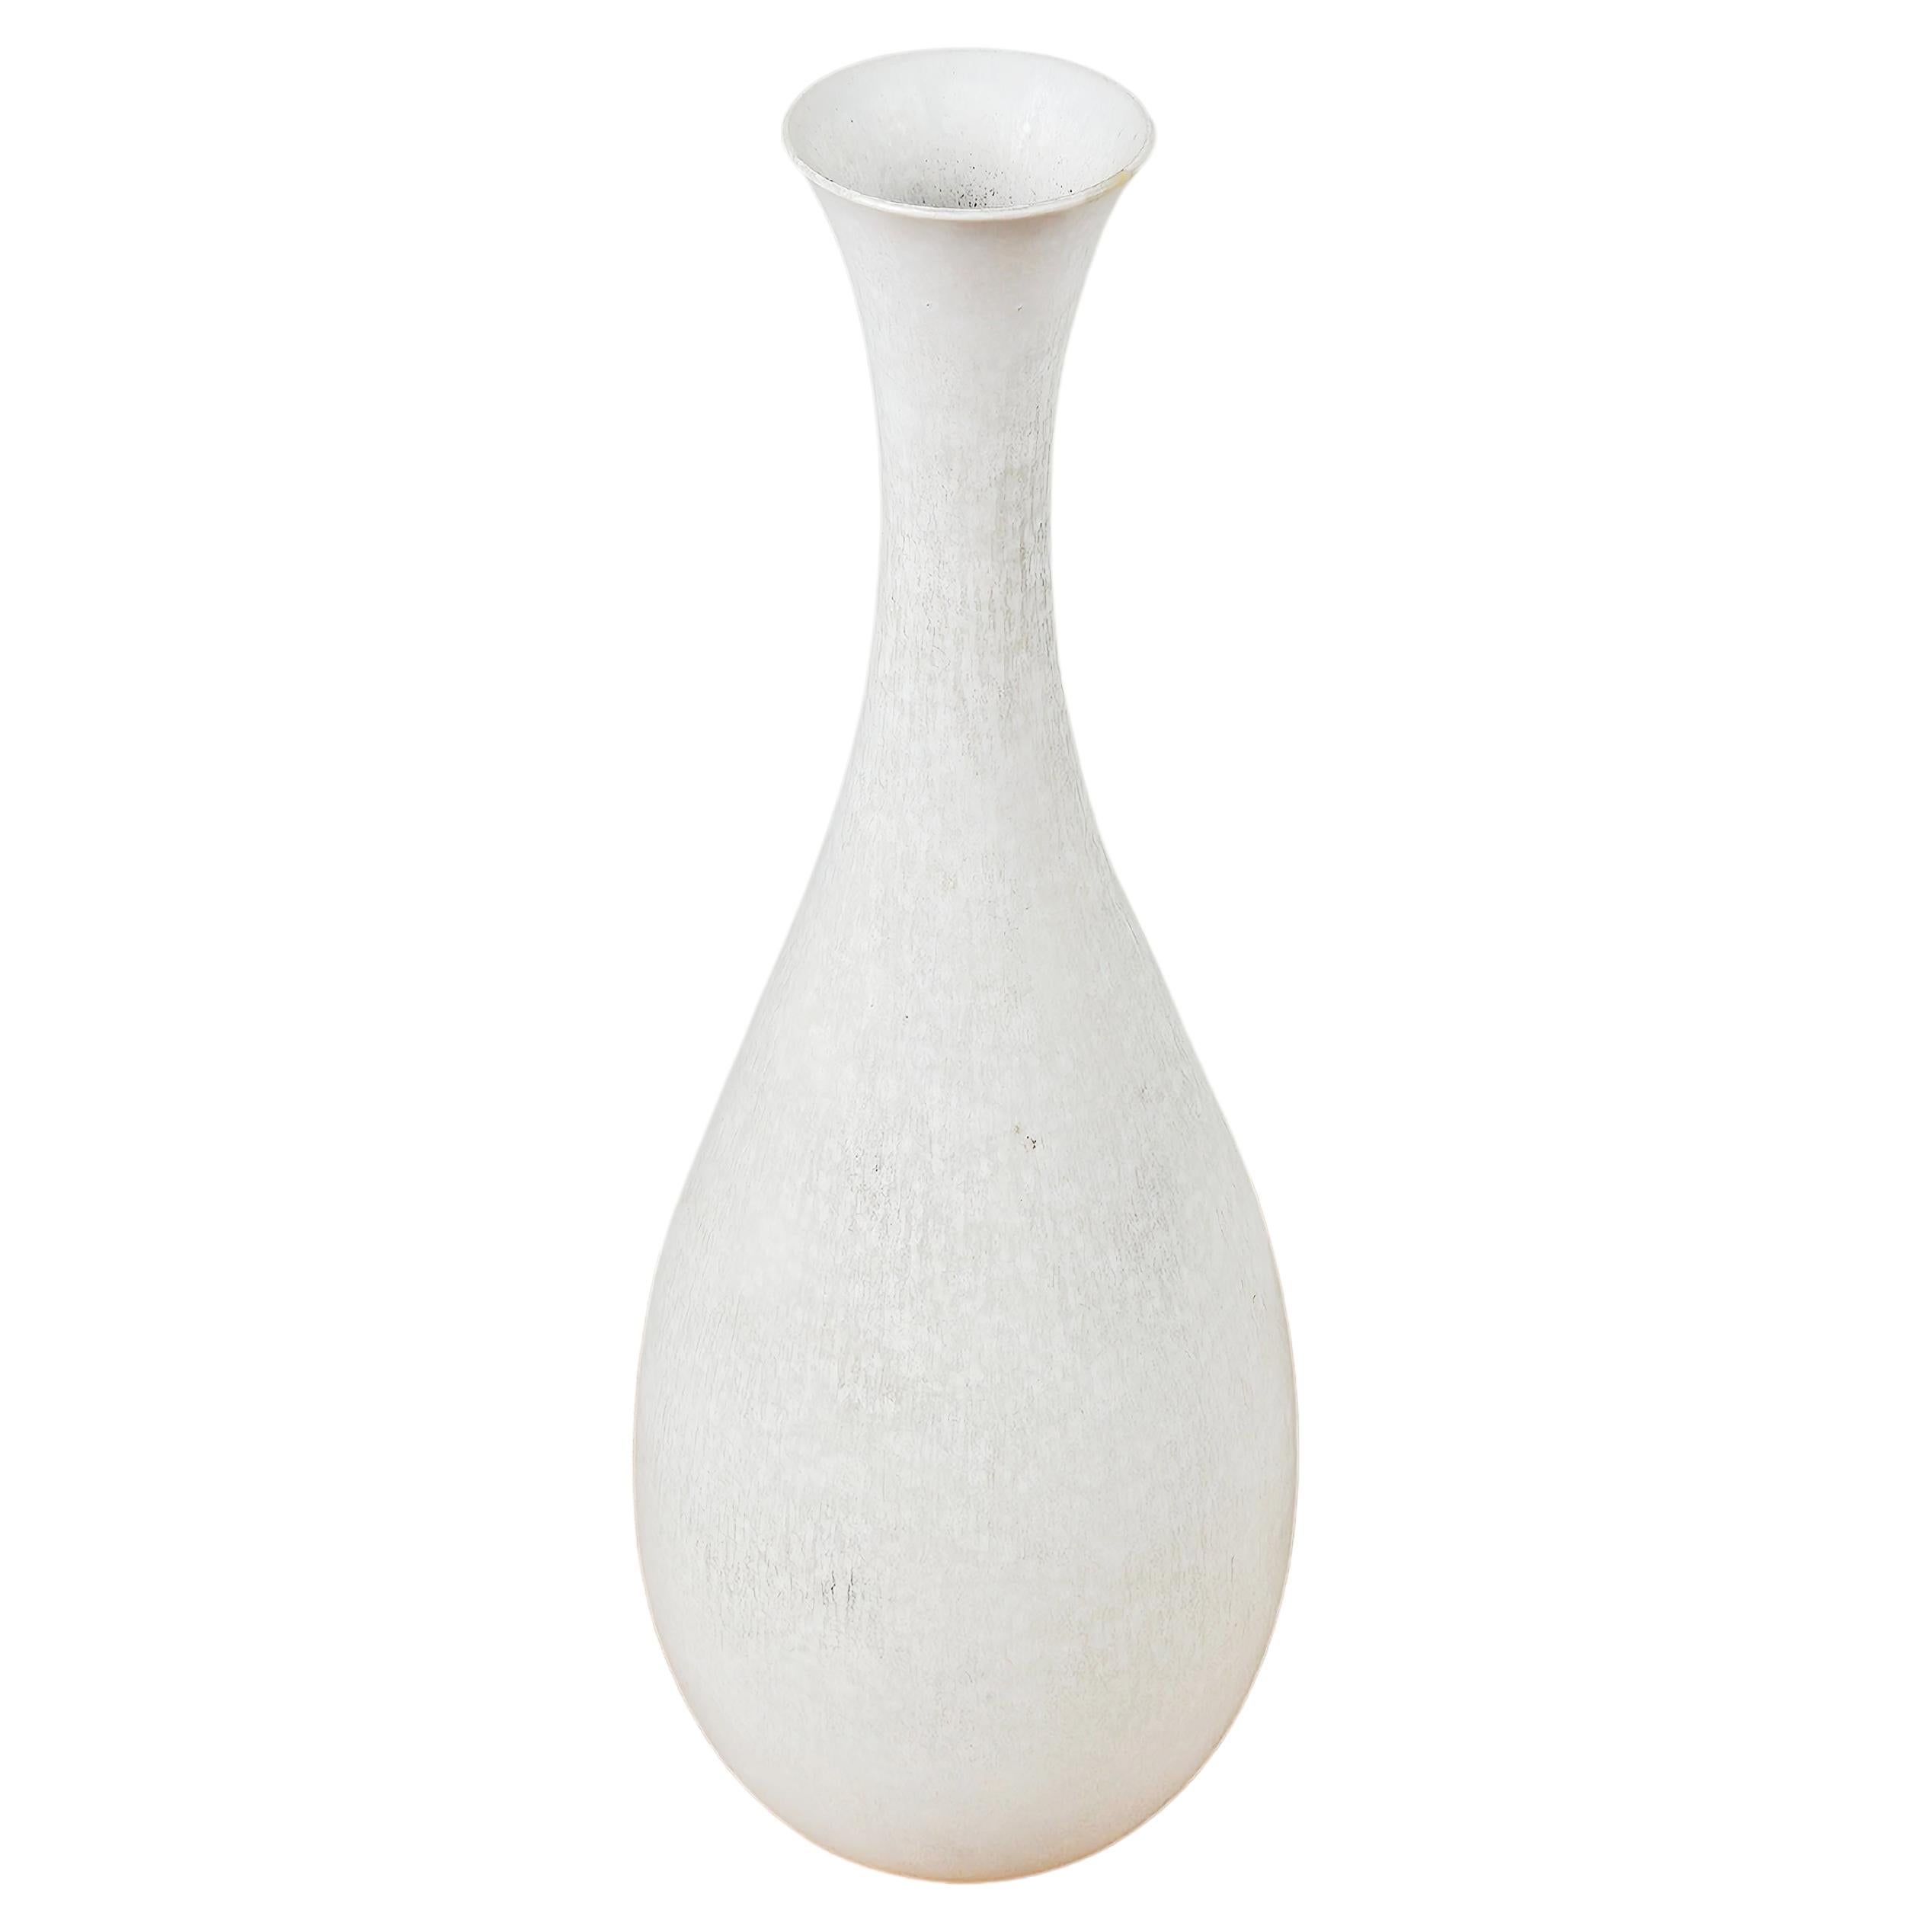 White stoneware vase by Carl-Harry Stålhane for Rörstrand, Sweden, 1960s